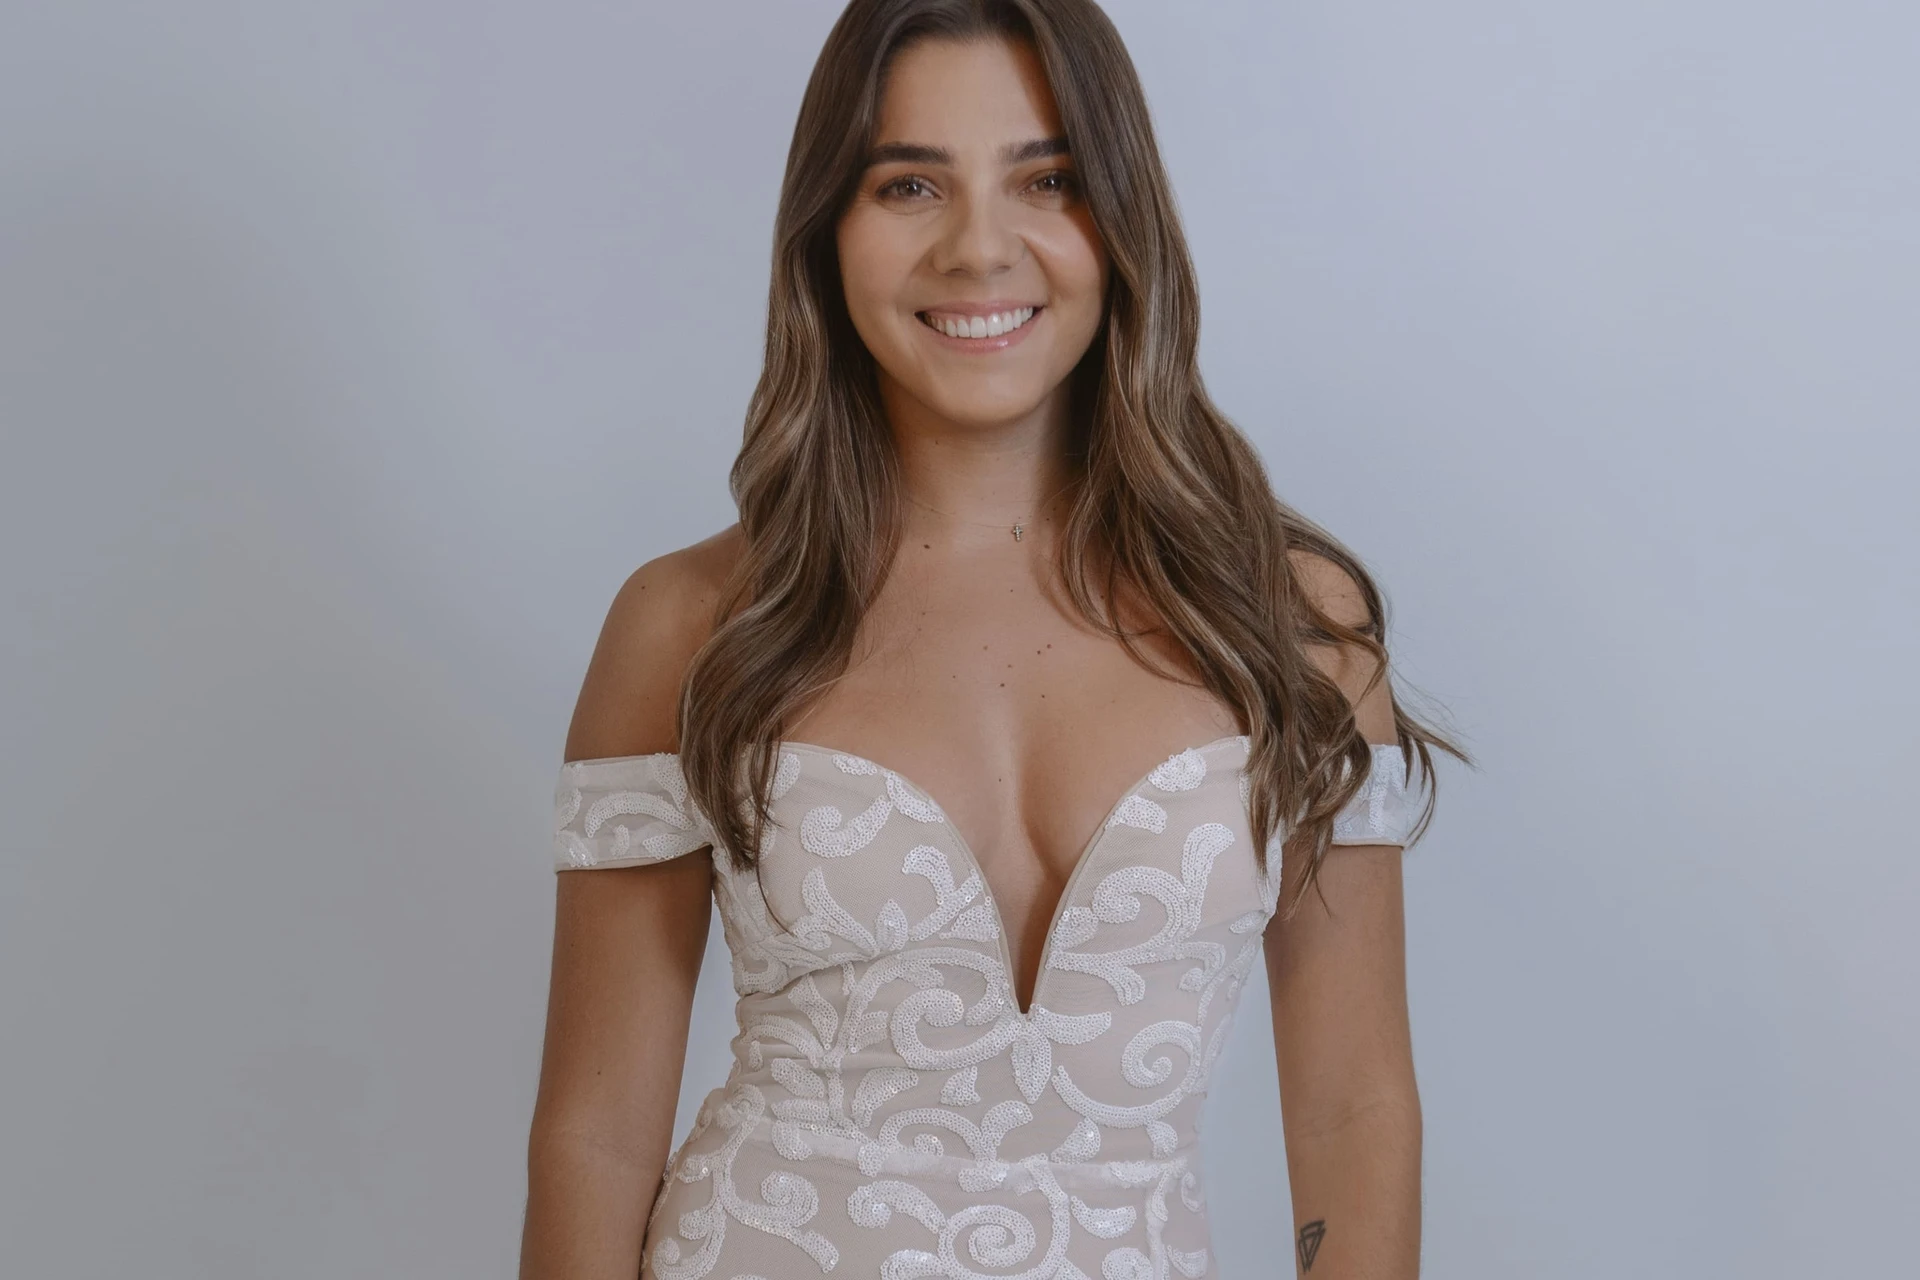 Mia® Consumer Carolina in a White Dress